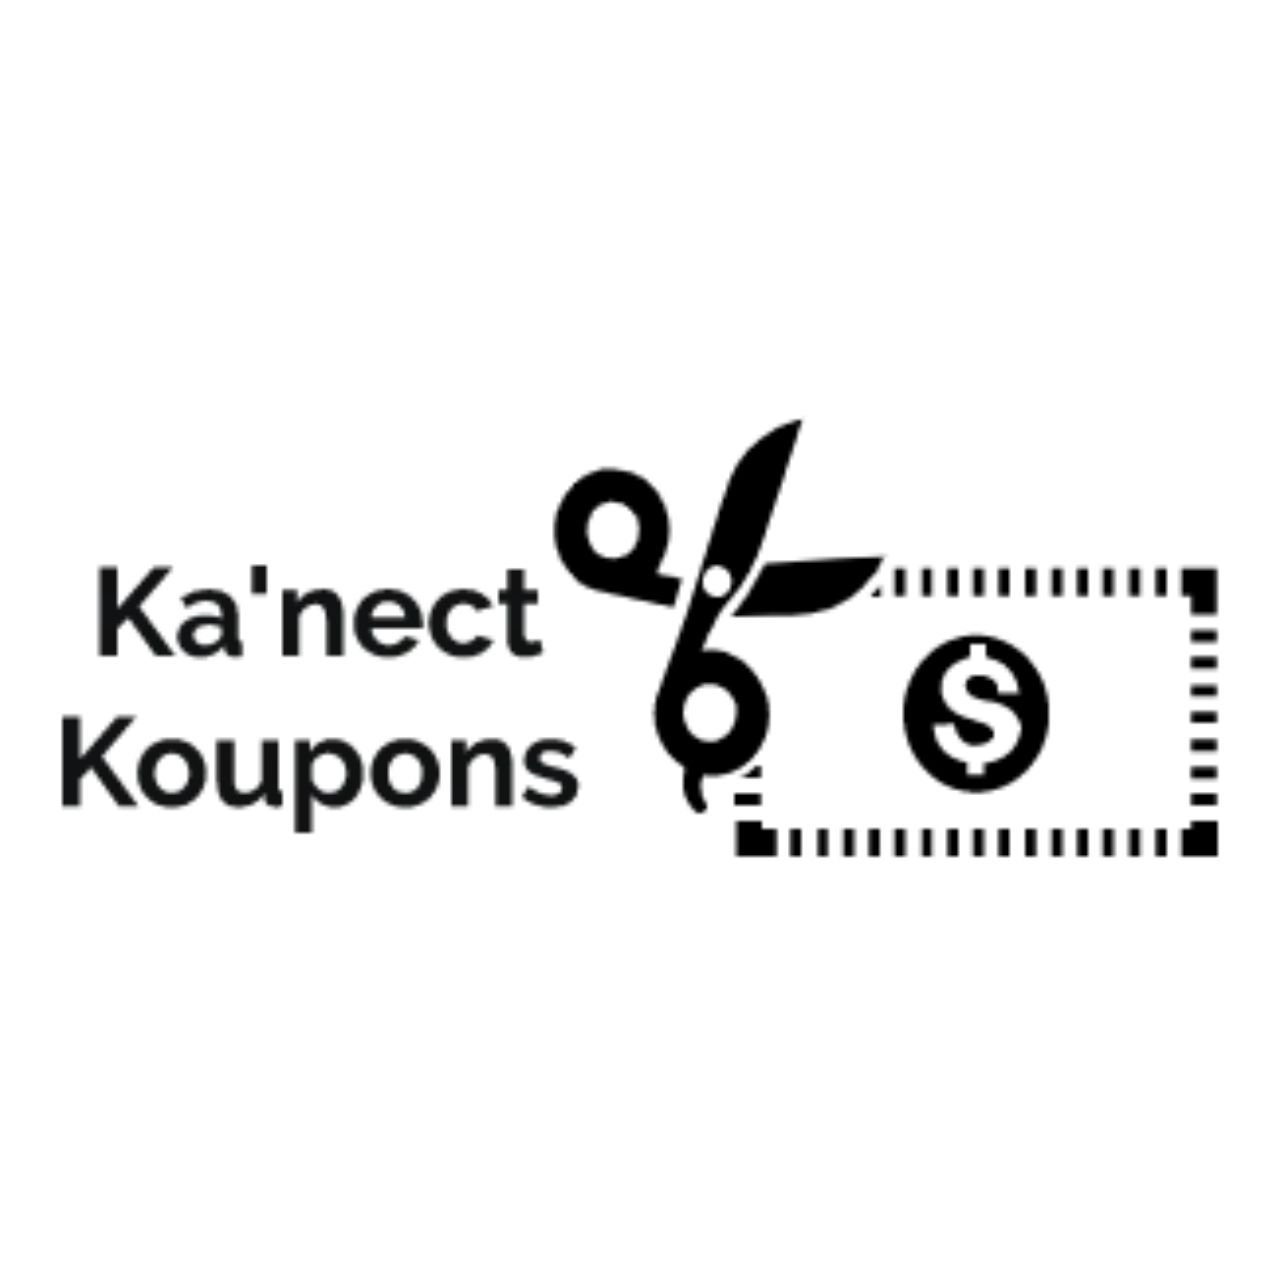 Kanect Koupons - Carousel pic